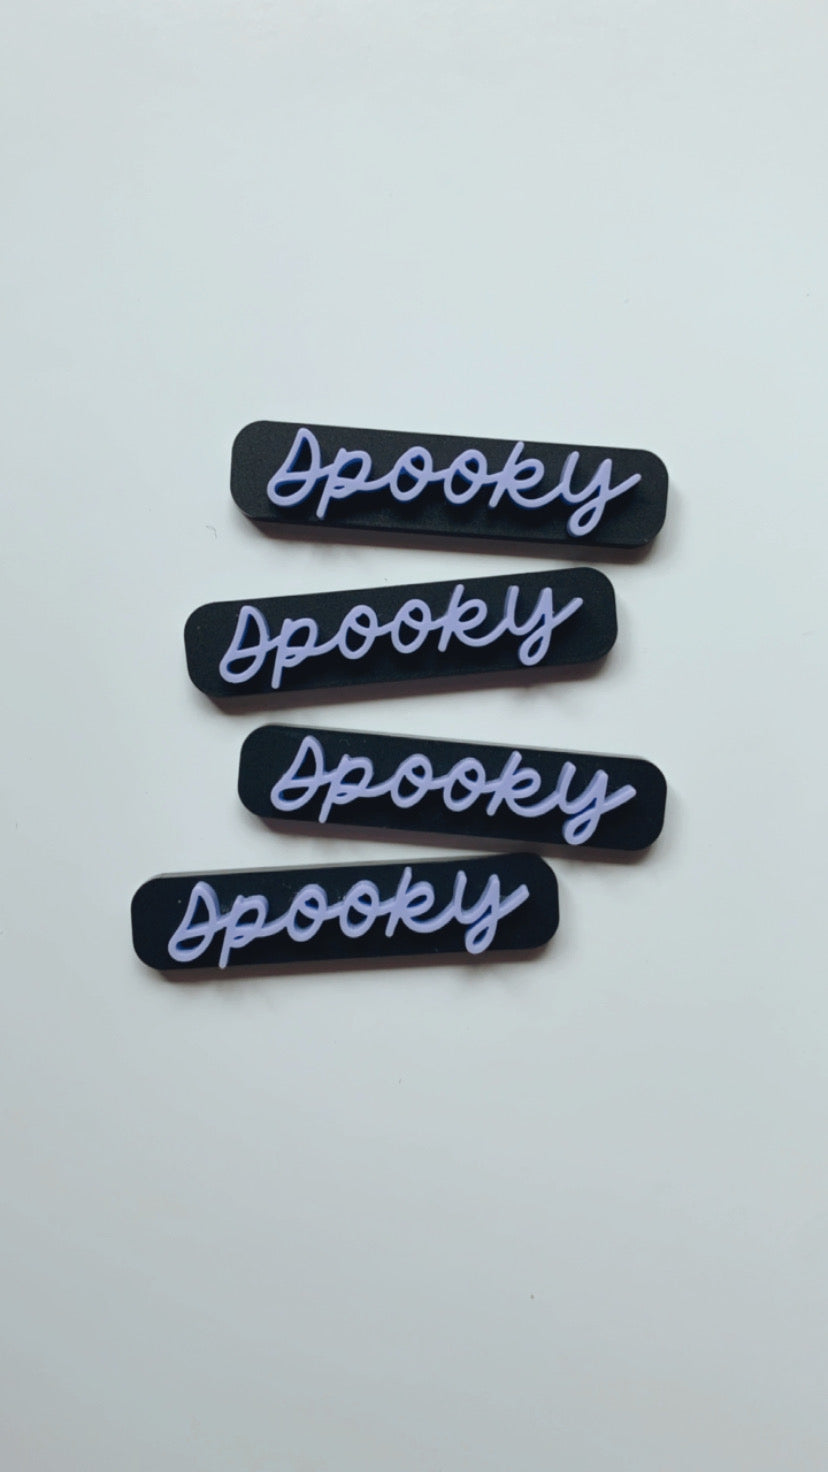 Spooky acrylic clips